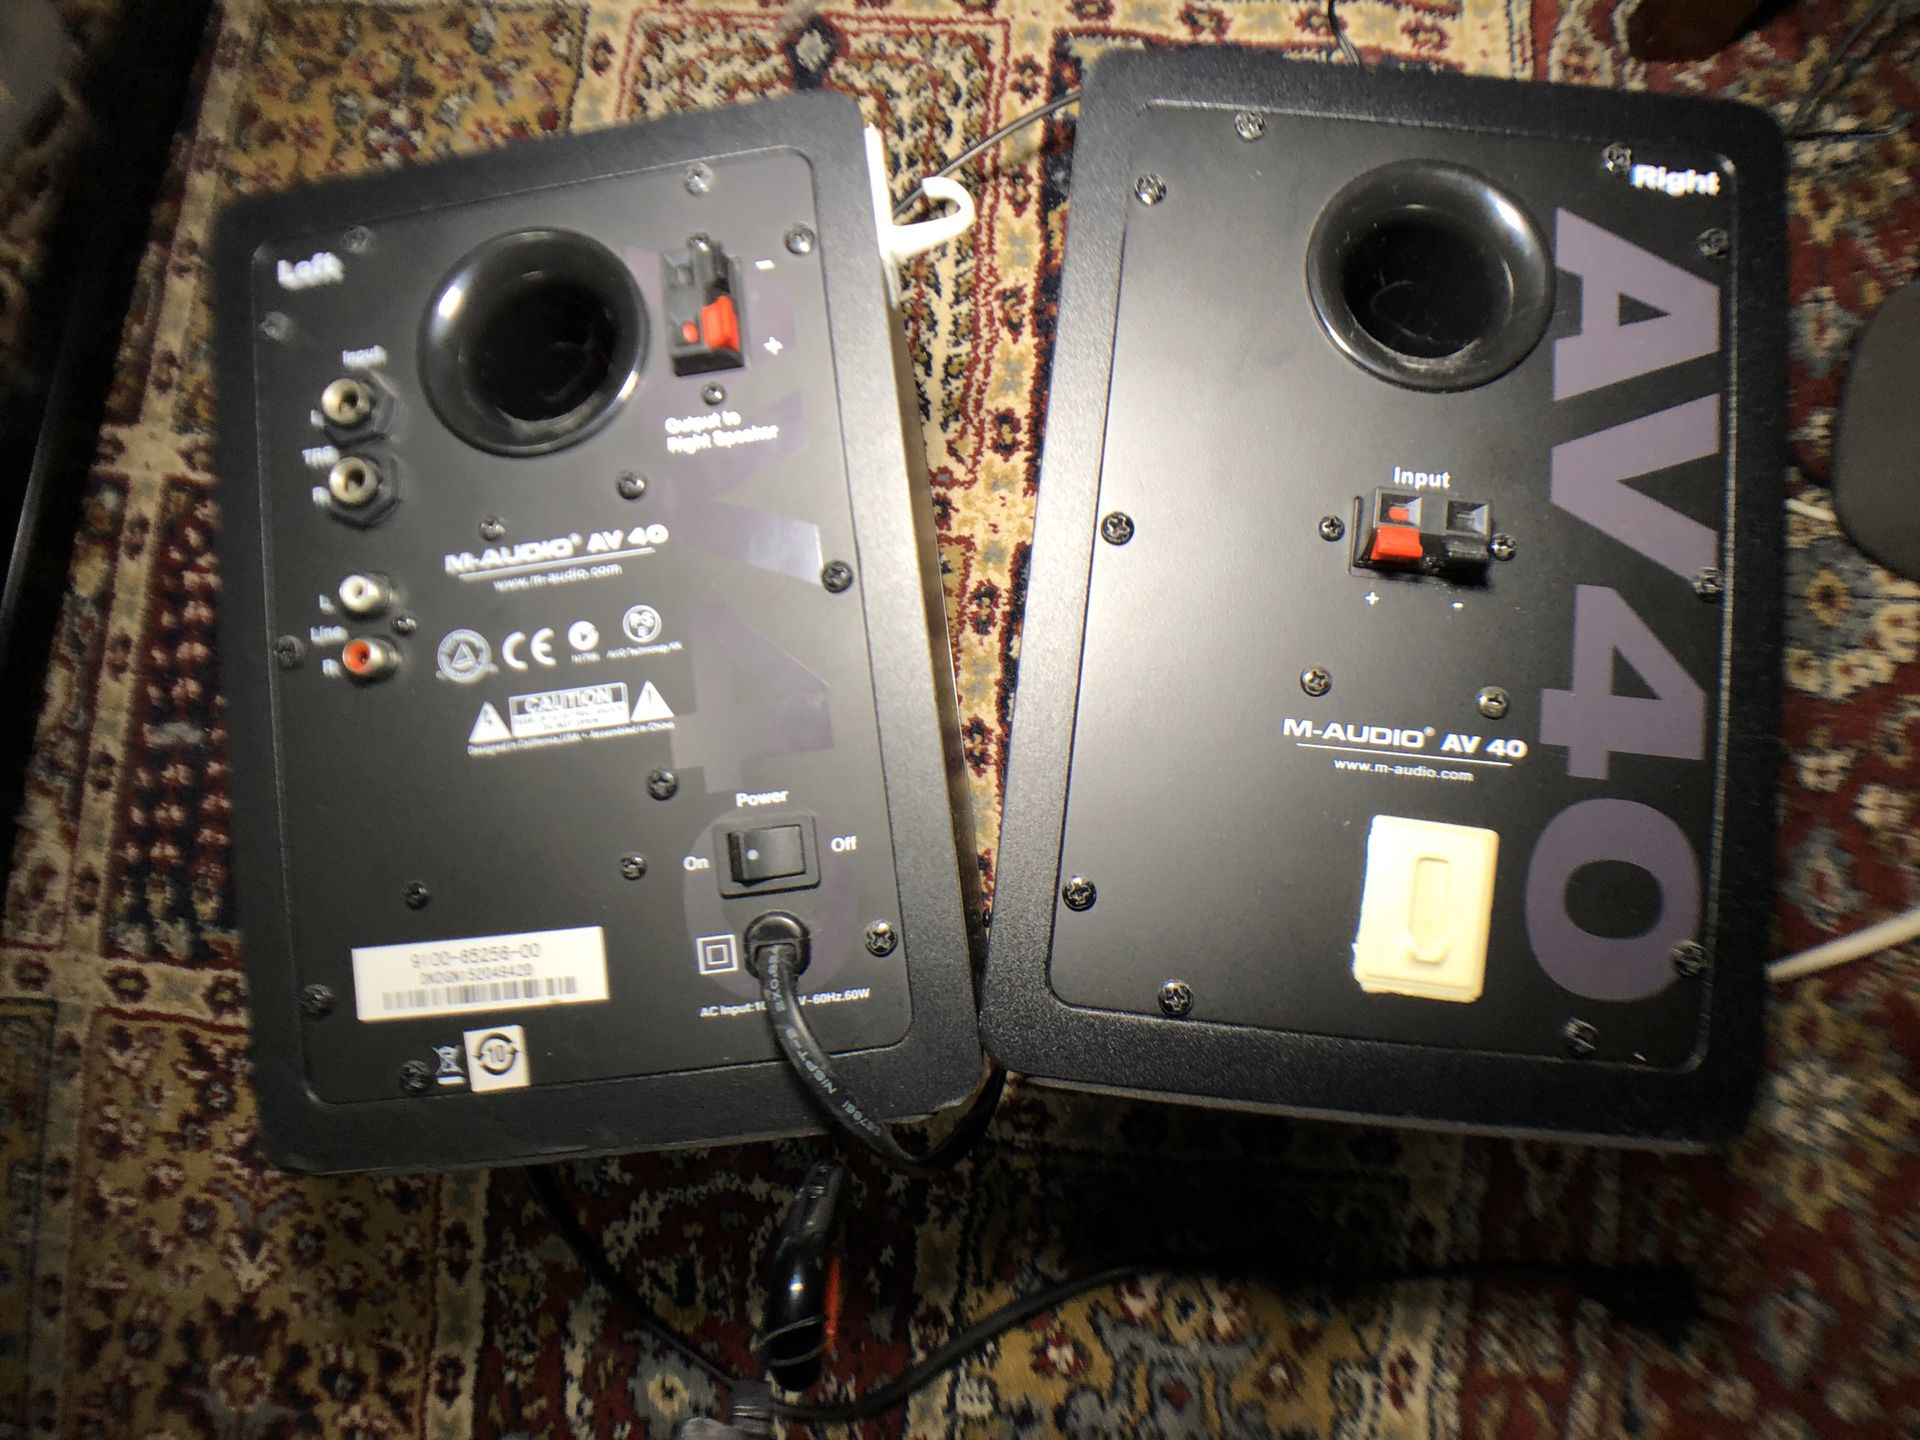 M-AUDII AV 40 Stereo pair